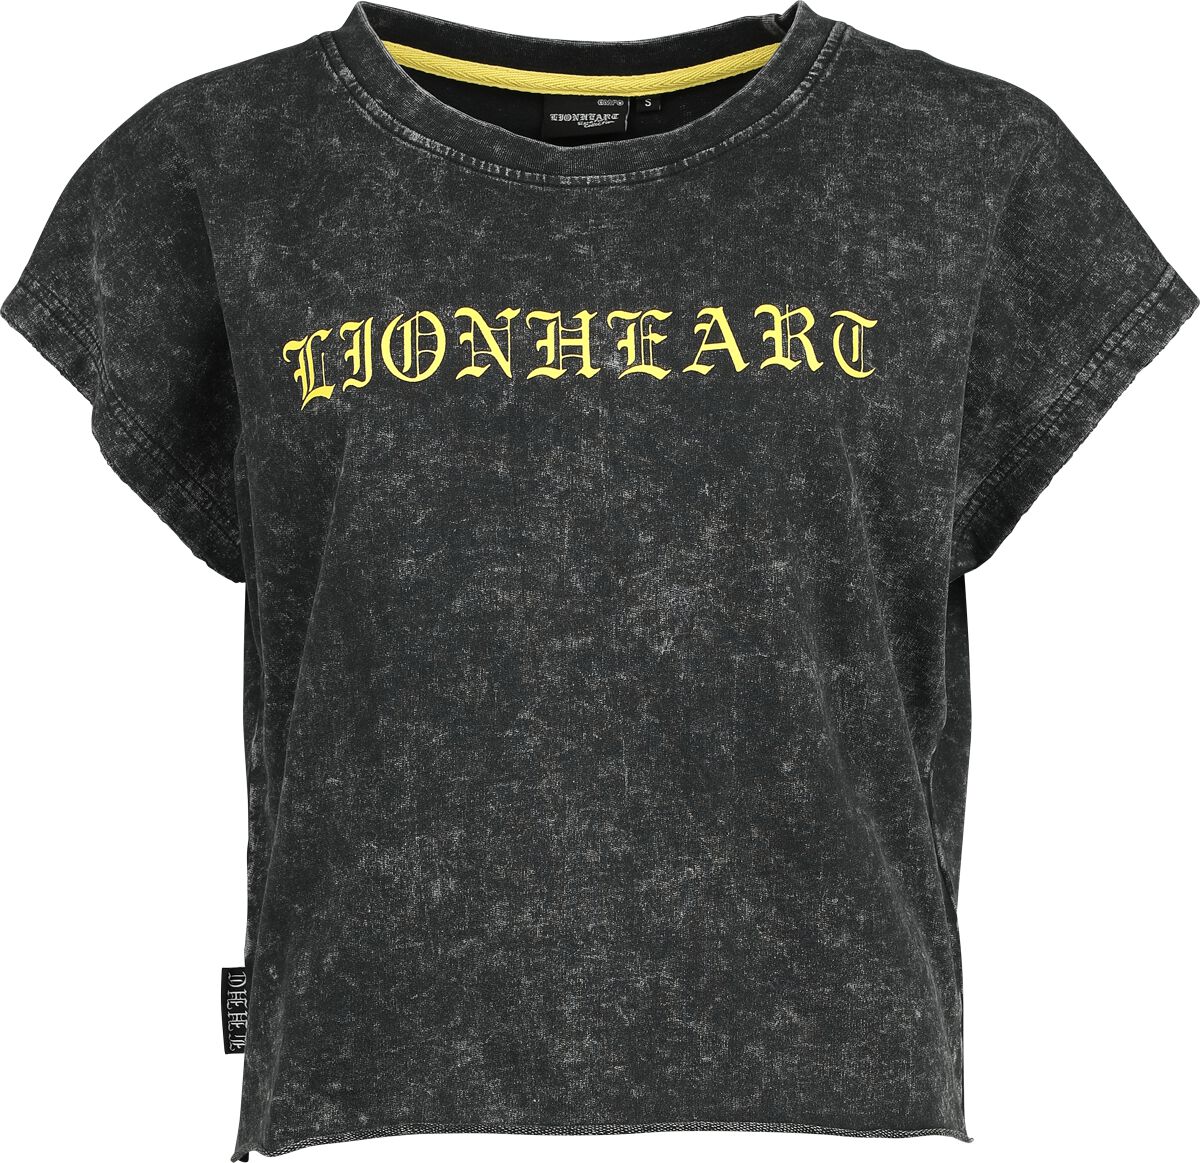 Lionheart T-Shirt - EMP Signature Collection - XS bis 3XL - für Damen - Größe M - grau  - EMP exklusives Merchandise!